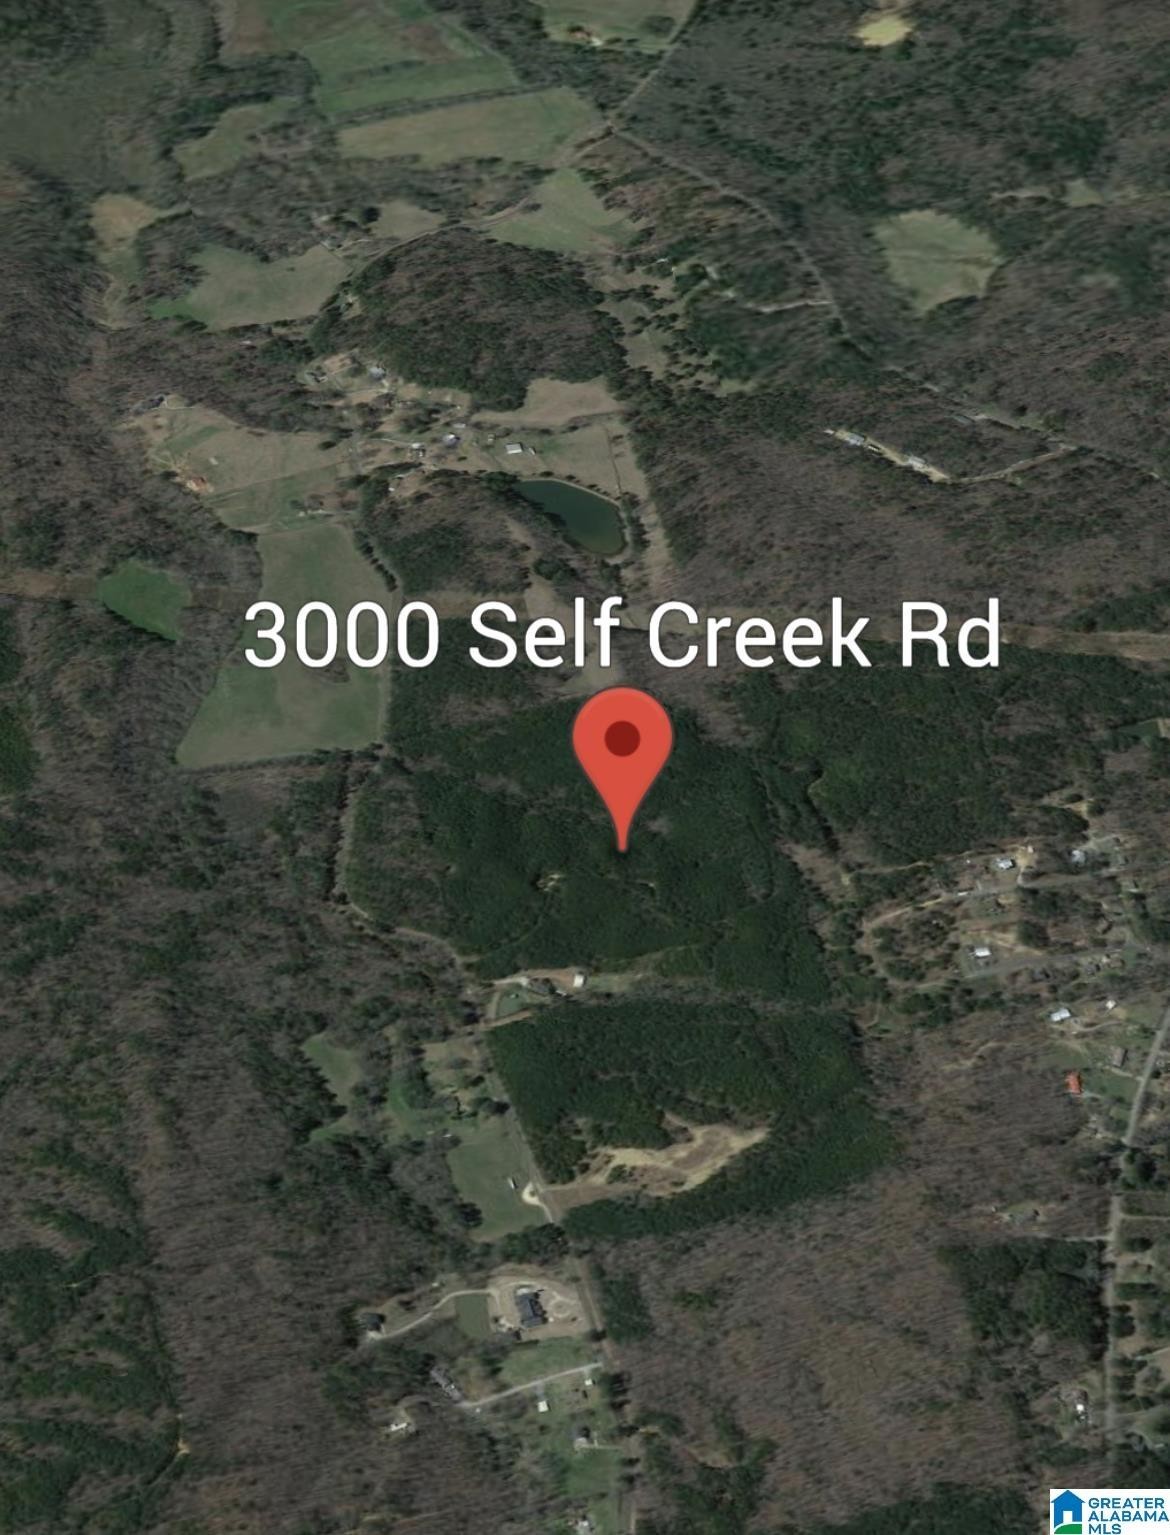 1. 3000 Self Creek Road